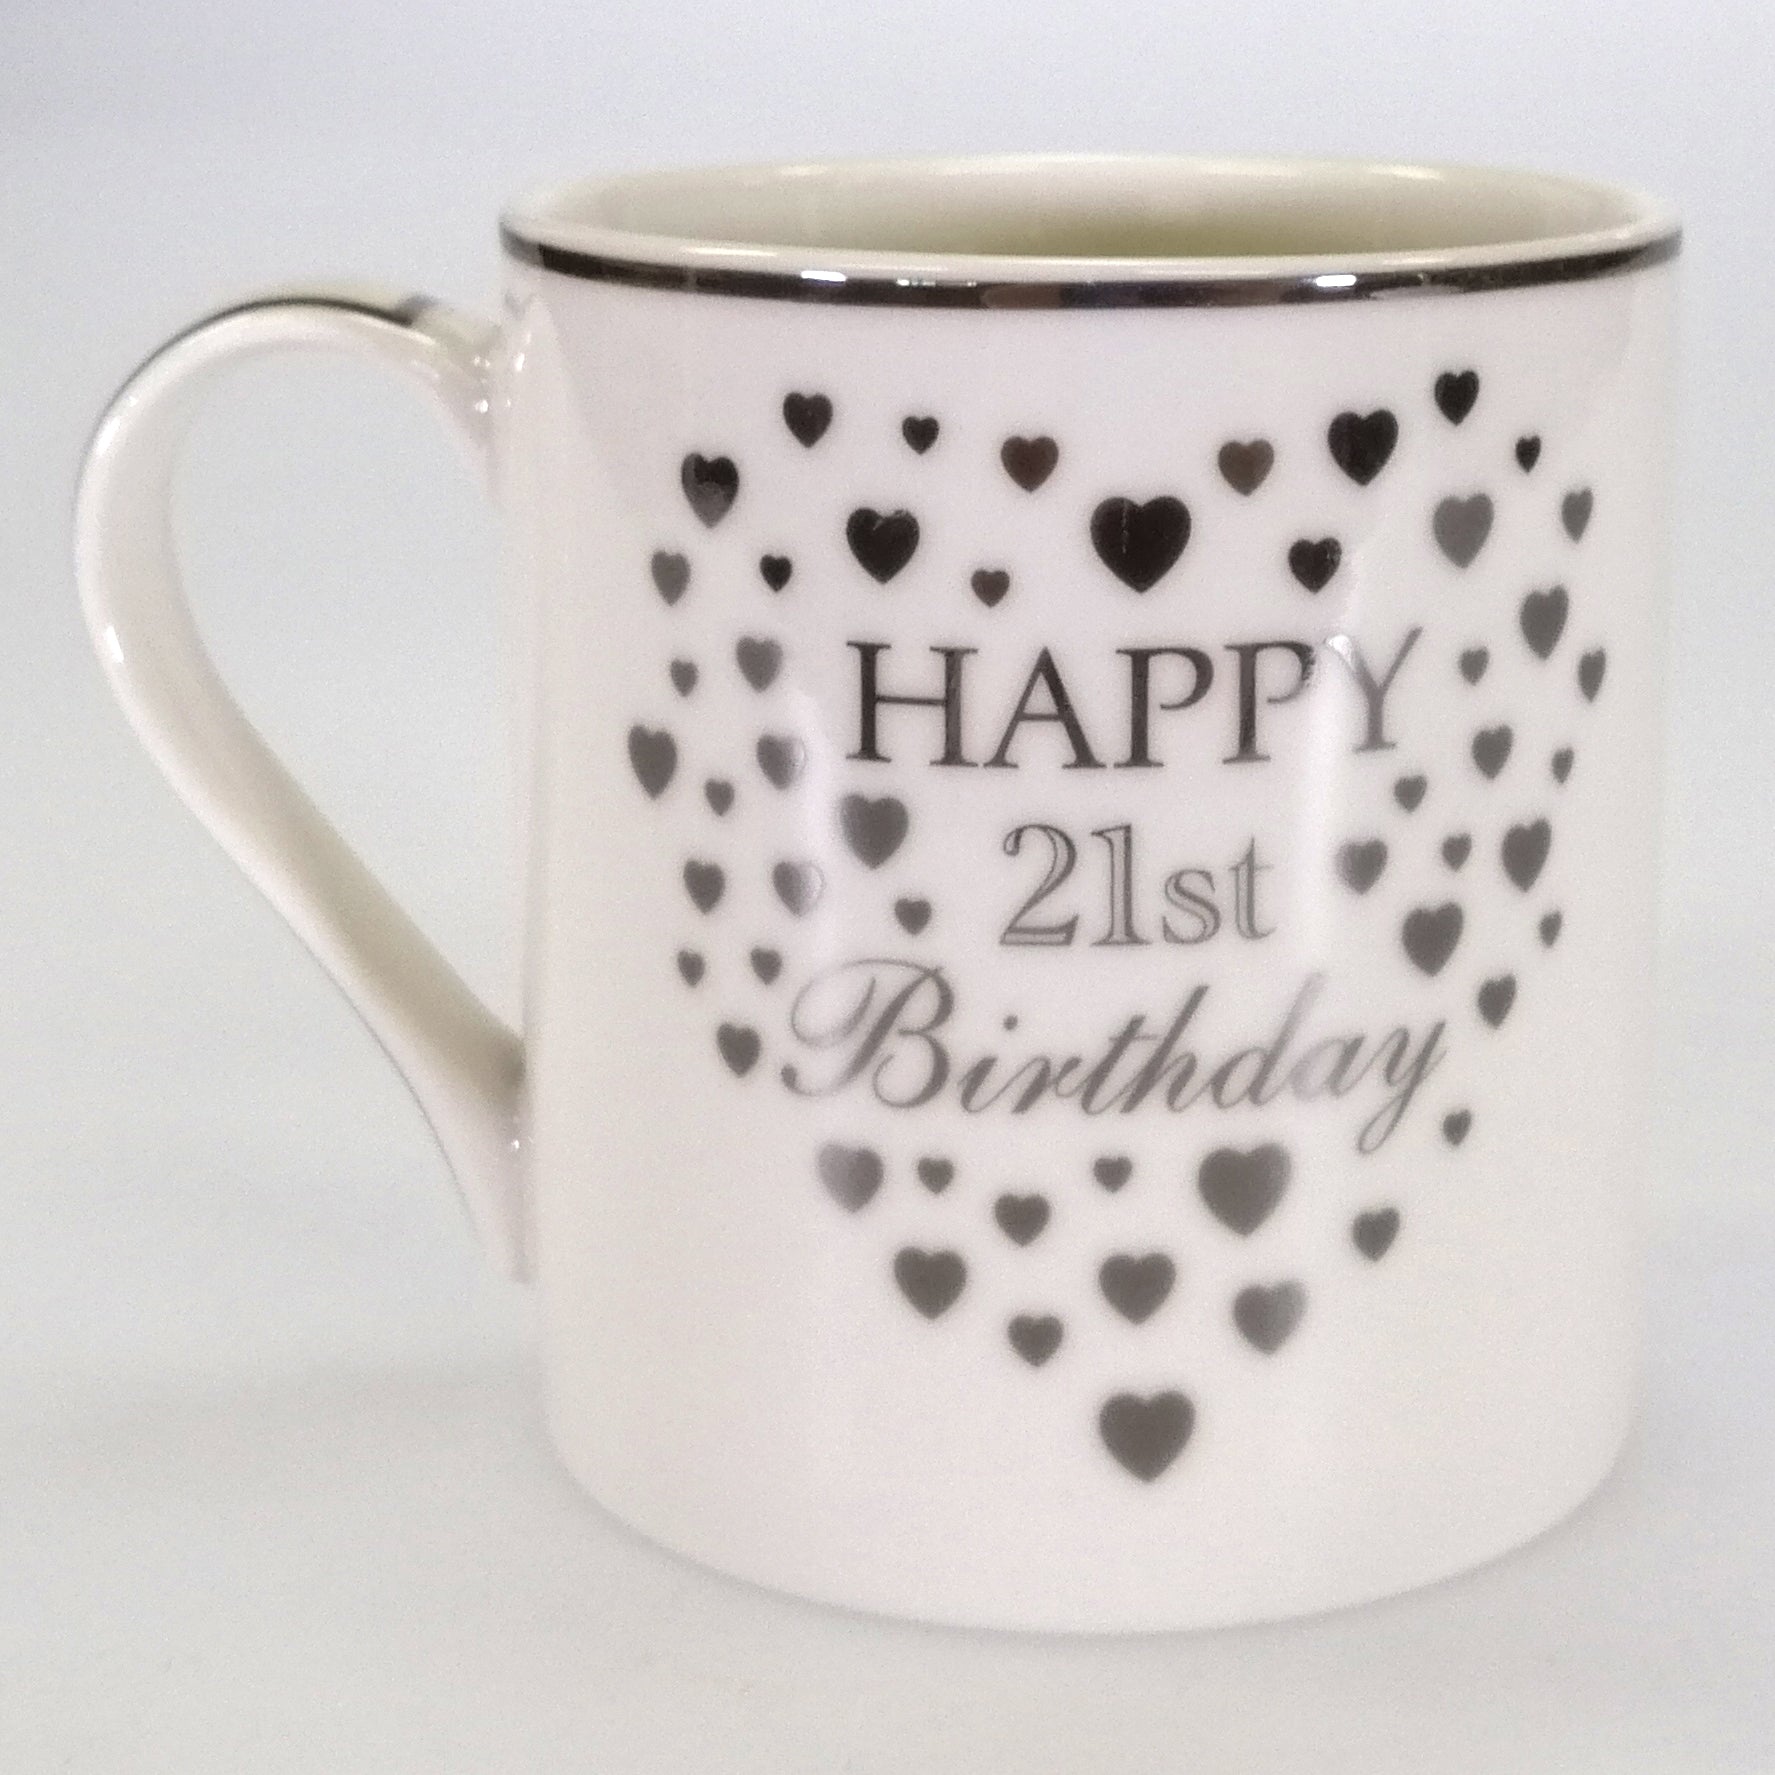 Happy 21st Birthday' Mug